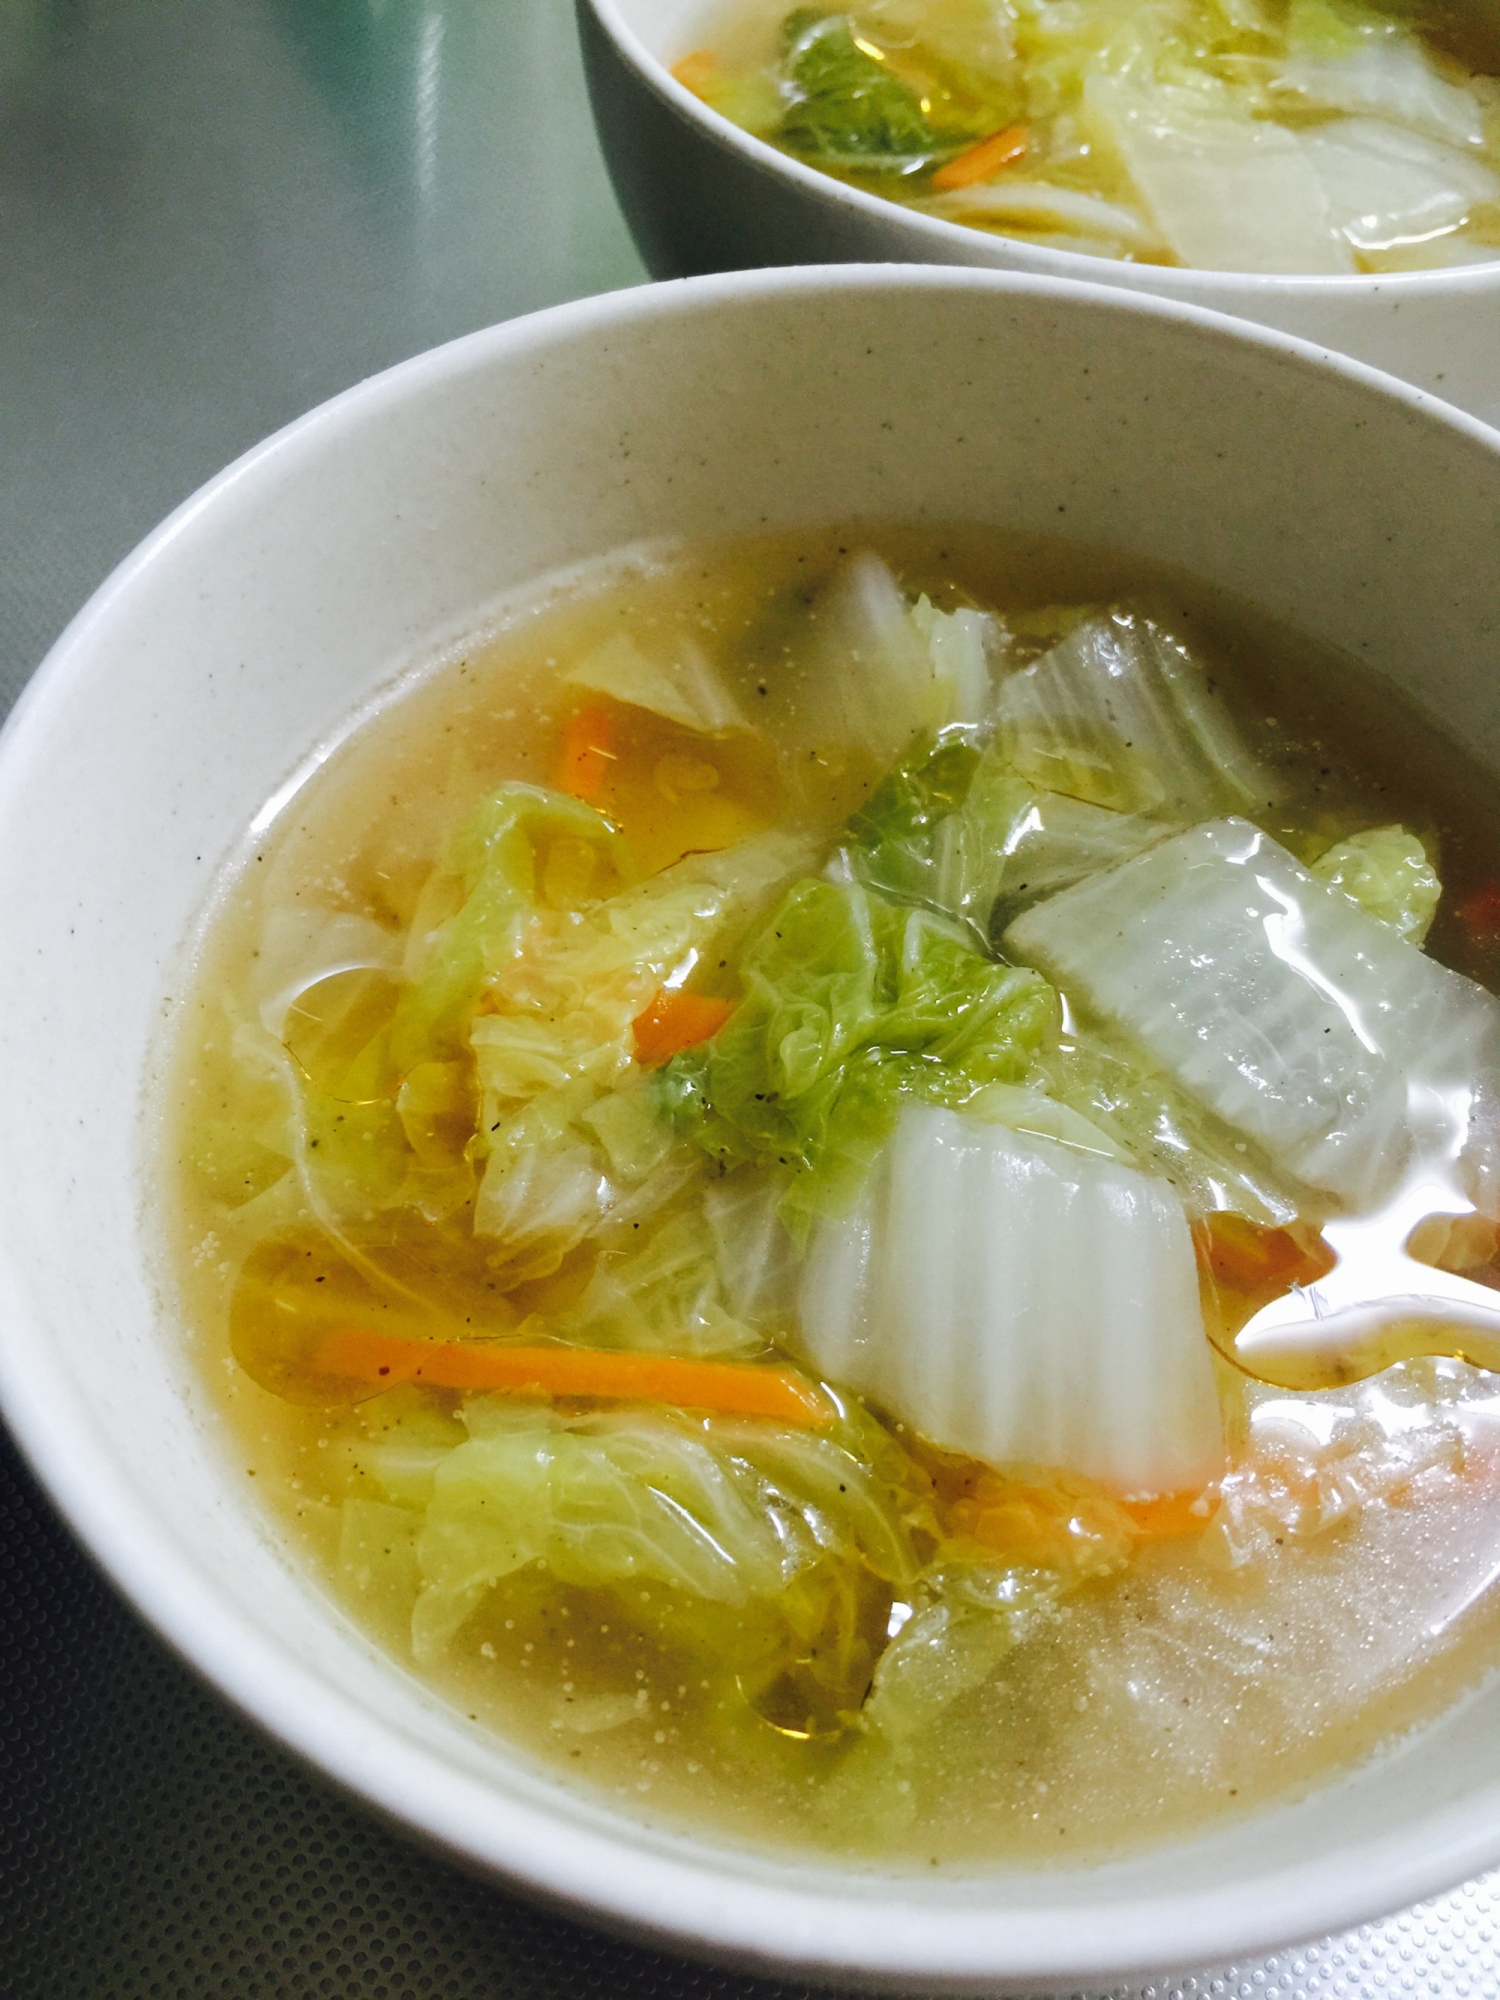 白菜とにんじんのとろみ中華スープ